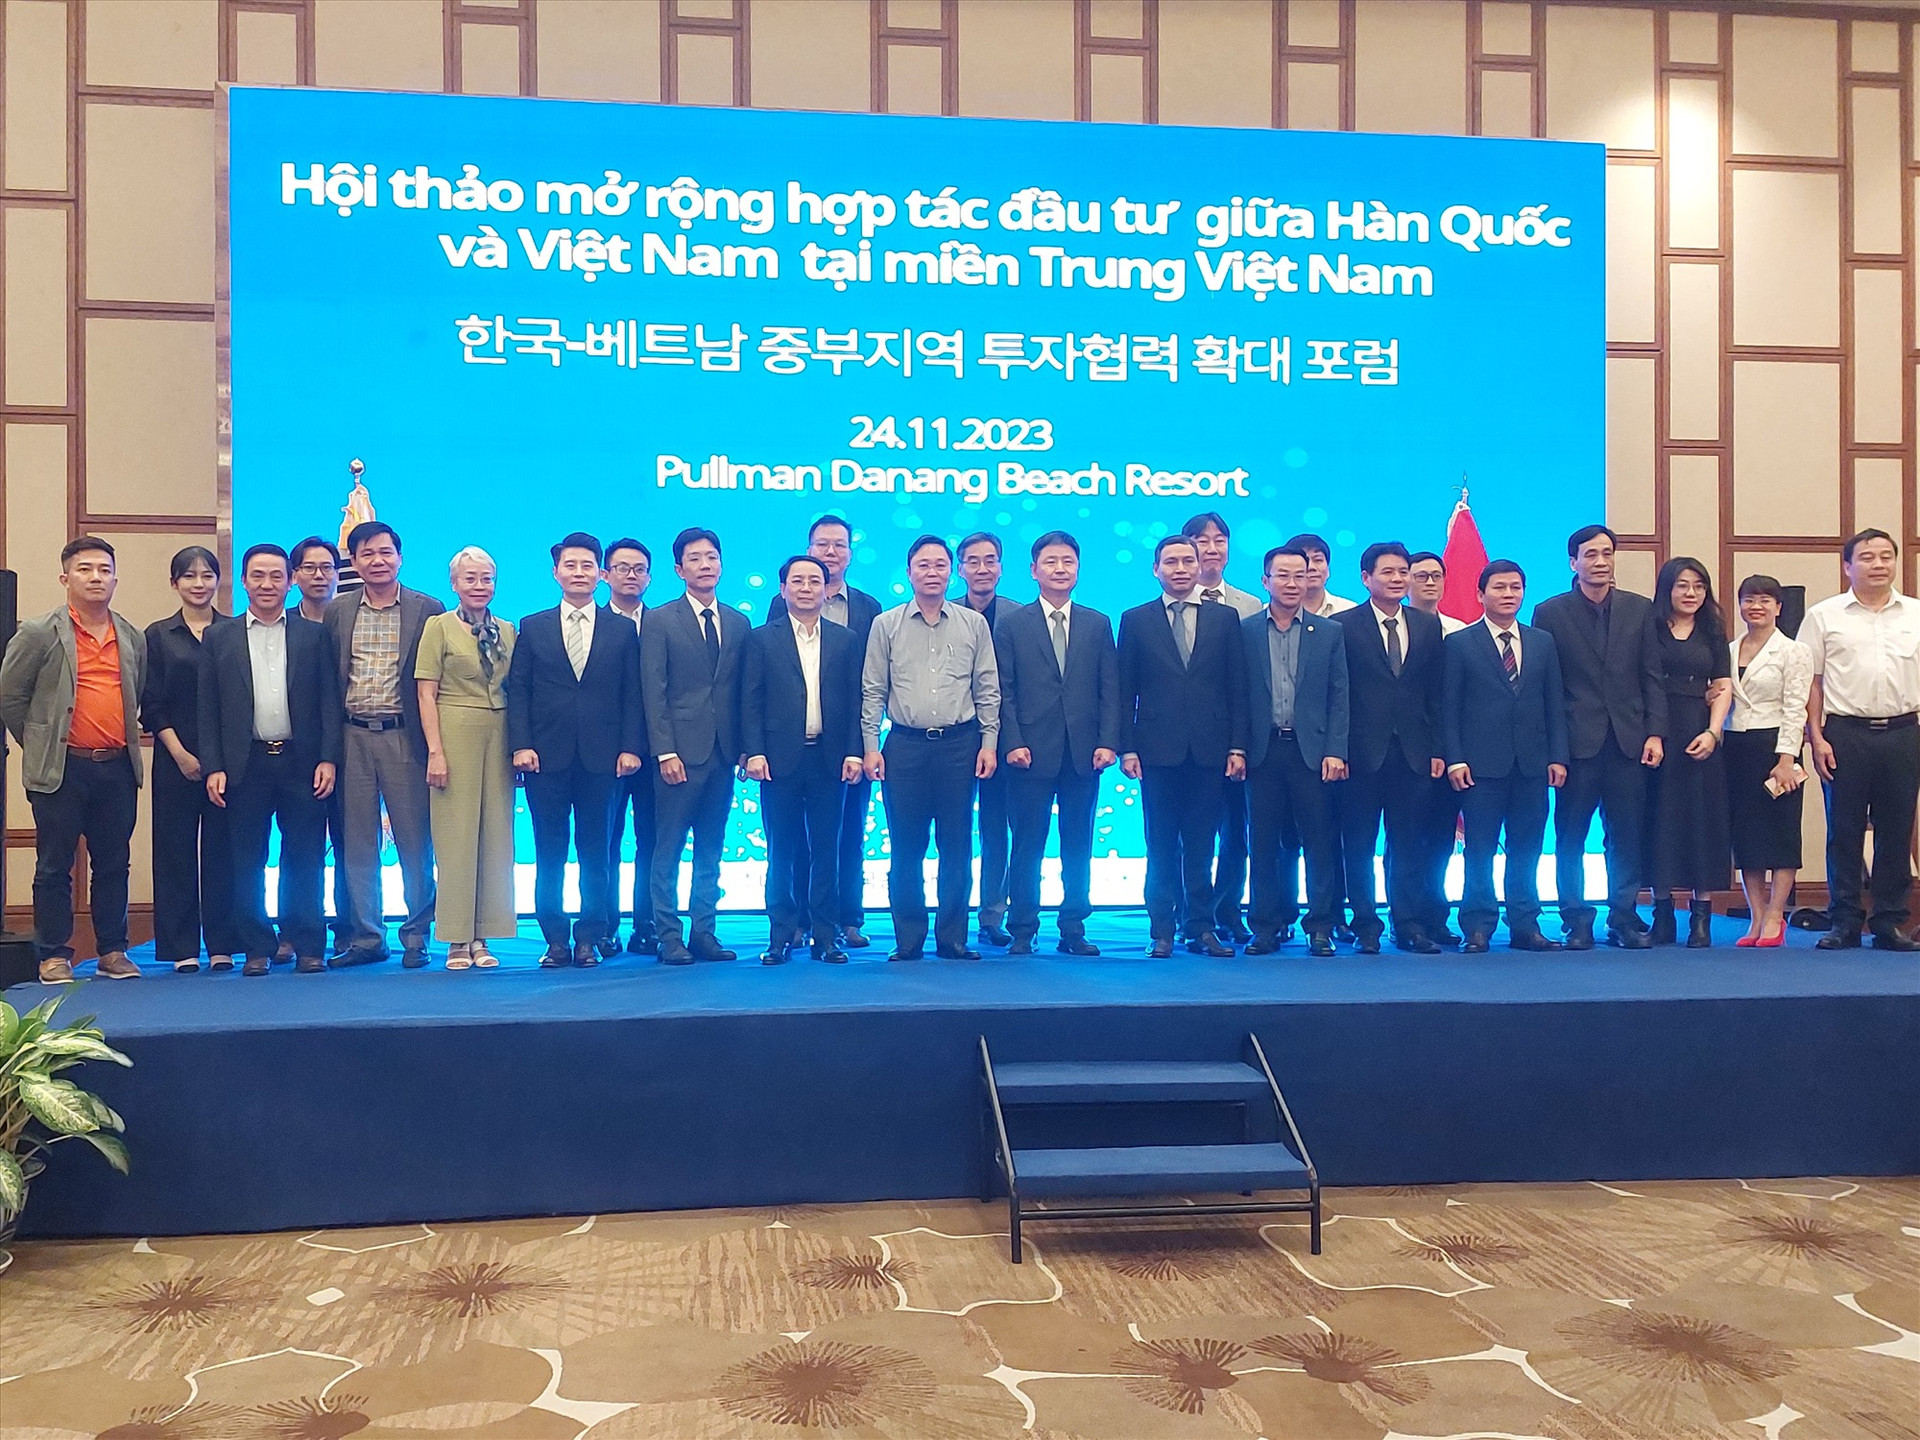 Các đại biểu tham dự Hội thảo mở rộng hợp tác đầu tư giữa Hàn Quốc và Việt Nam tại miền Trung Việt Nam chụp ảnh lưu niệm